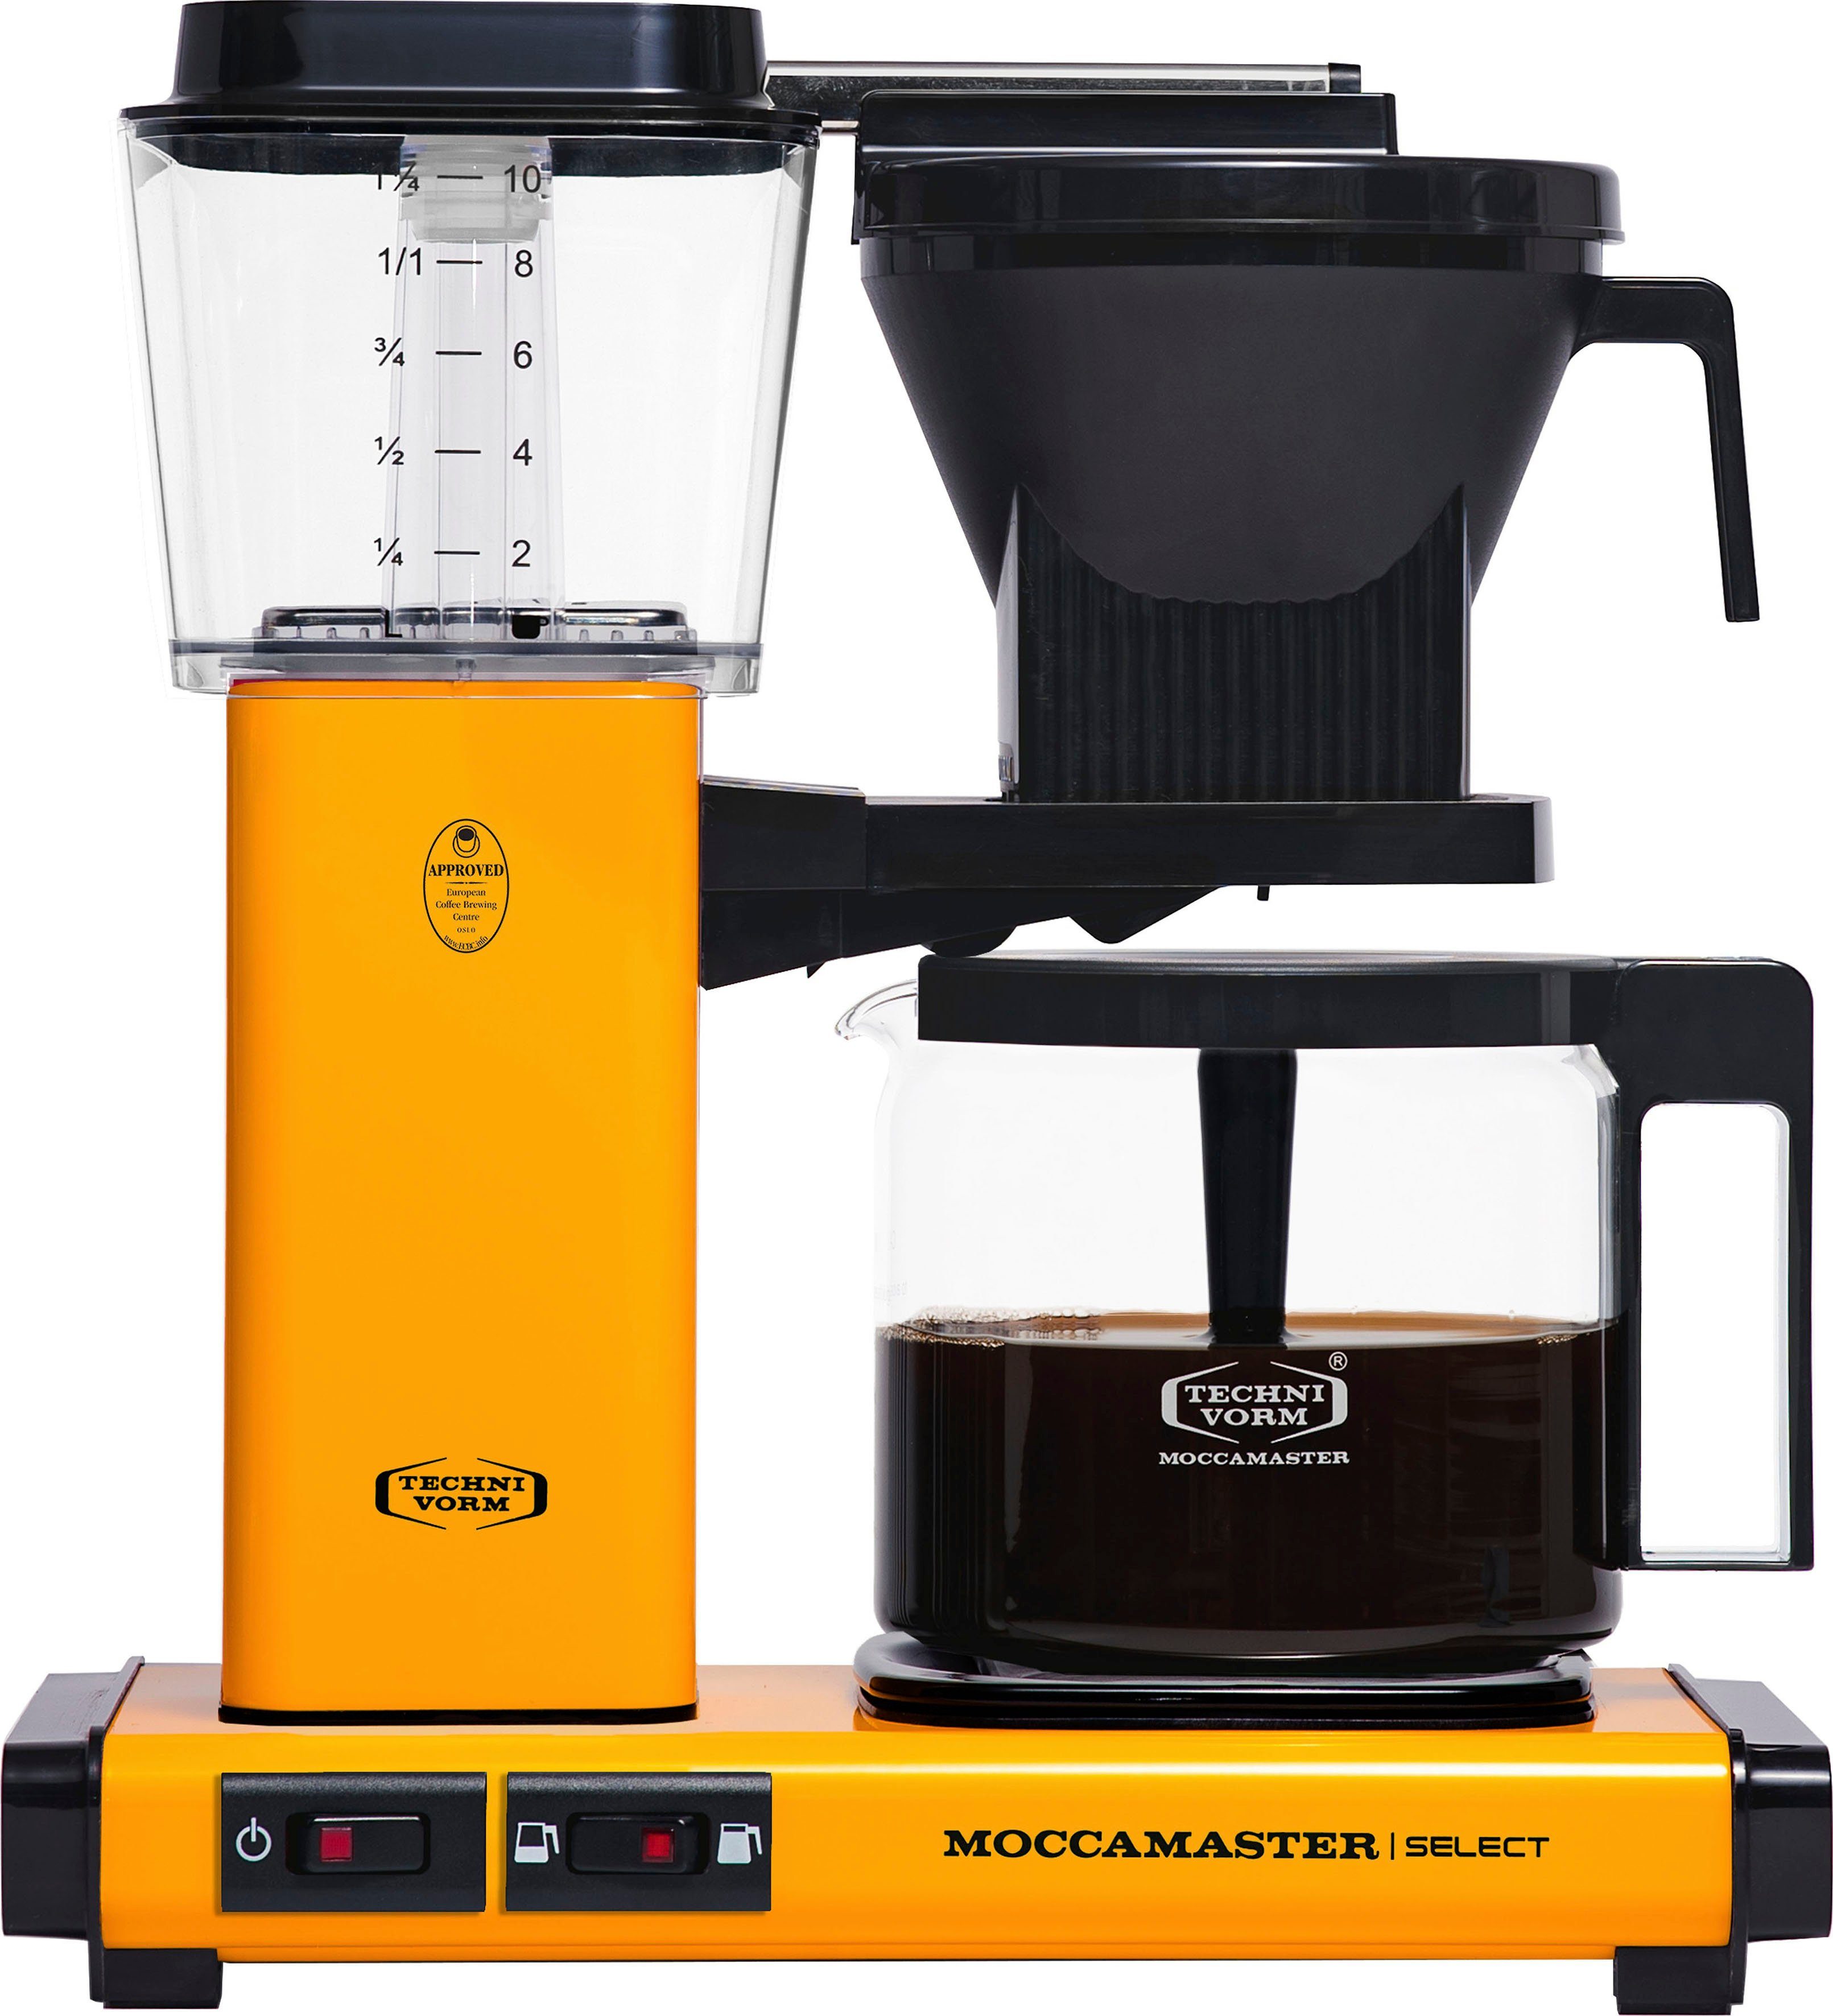 Moccamaster Filterkaffeemaschine KBG Select yellow pepper, 1,25l Kaffeekanne, Papierfilter 1×4